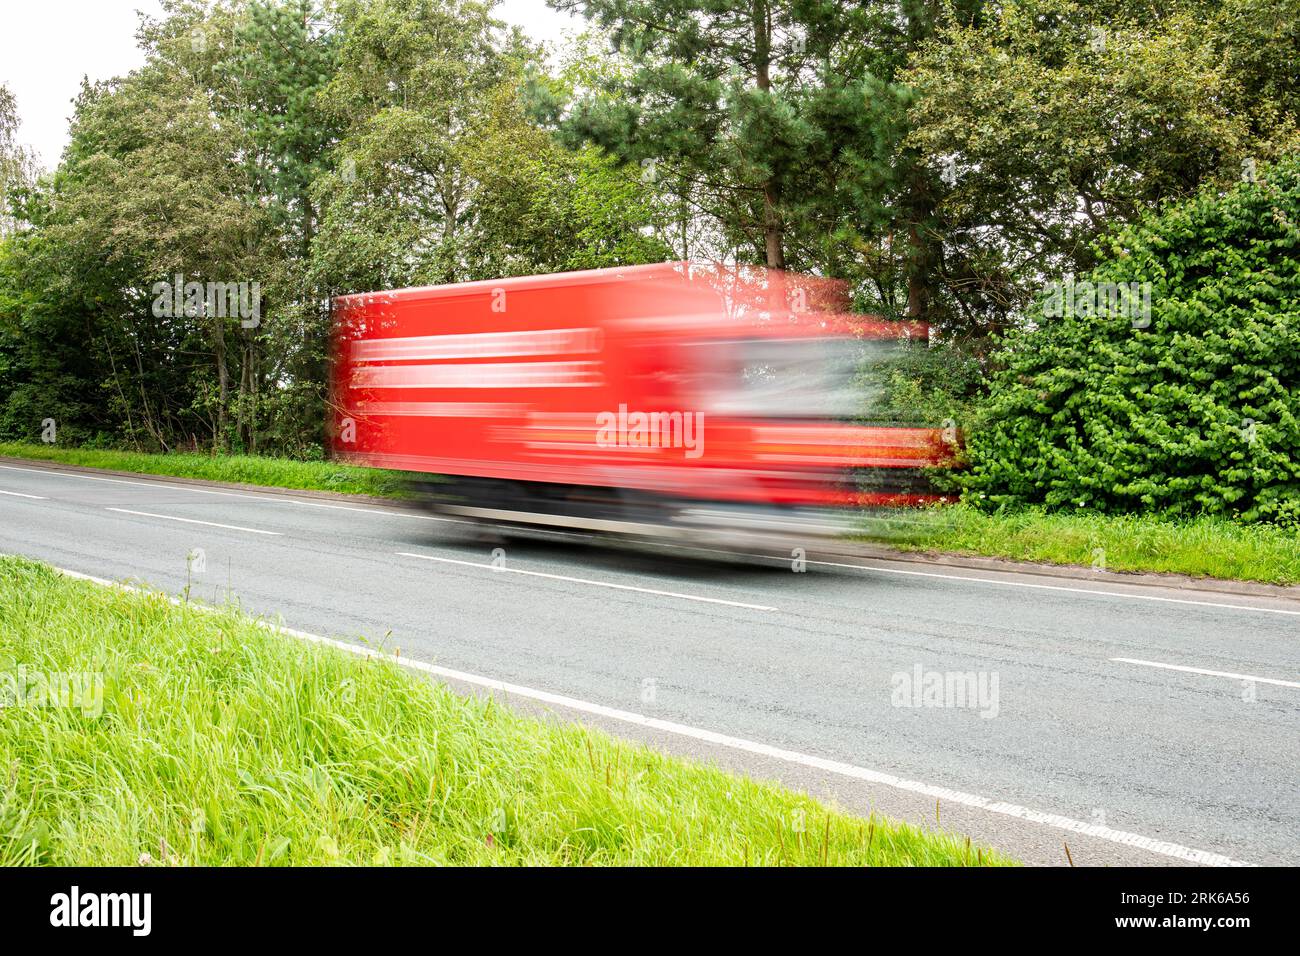 Speeding Royal Mail van on motorway UK Stock Photo